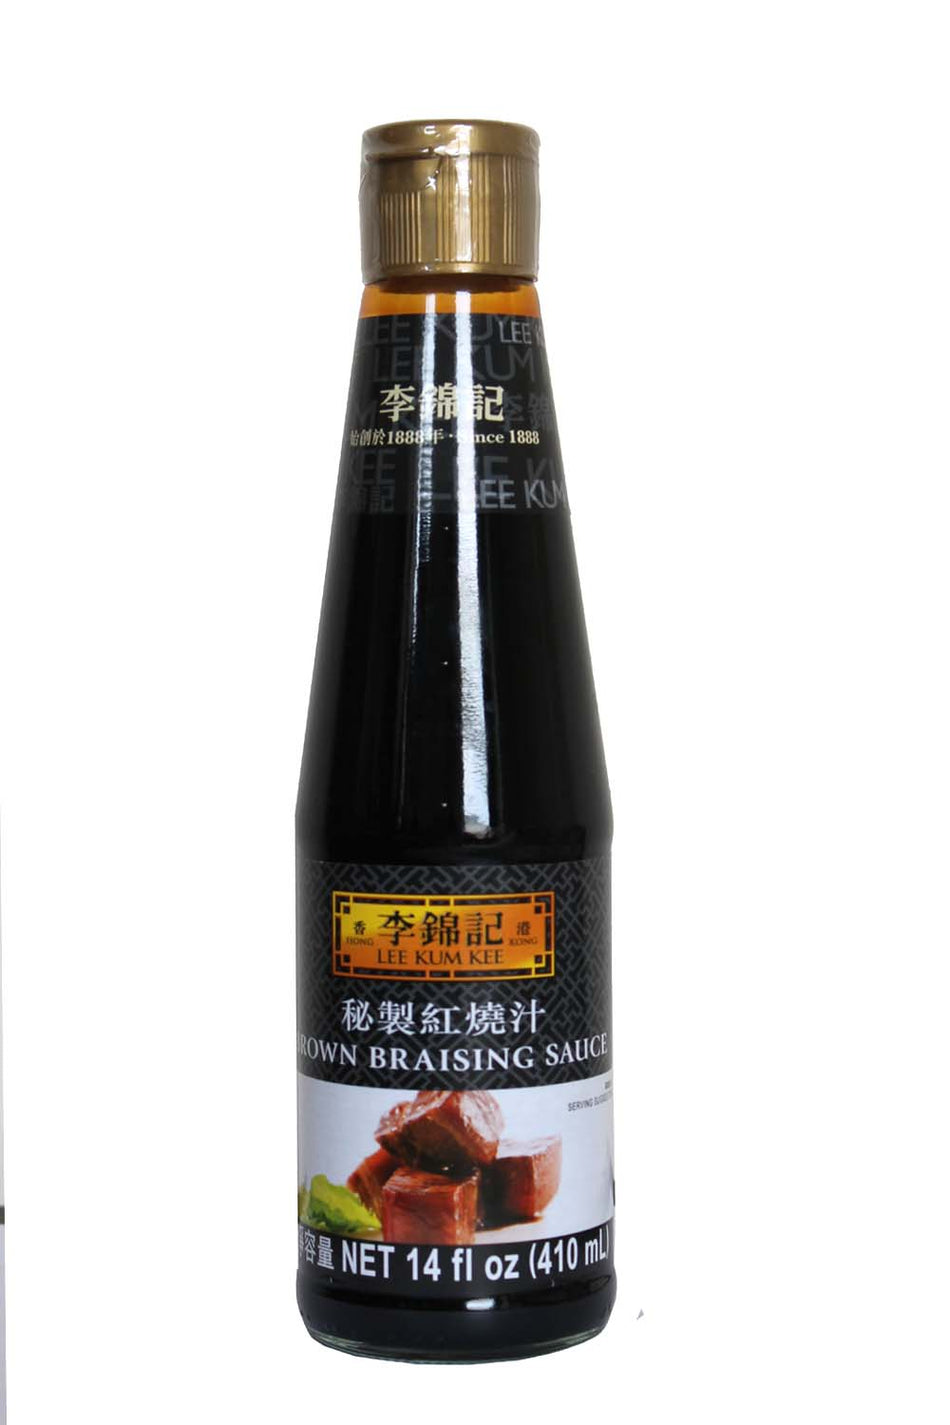 Lee Kum Kee  Brown  Braising Sauce